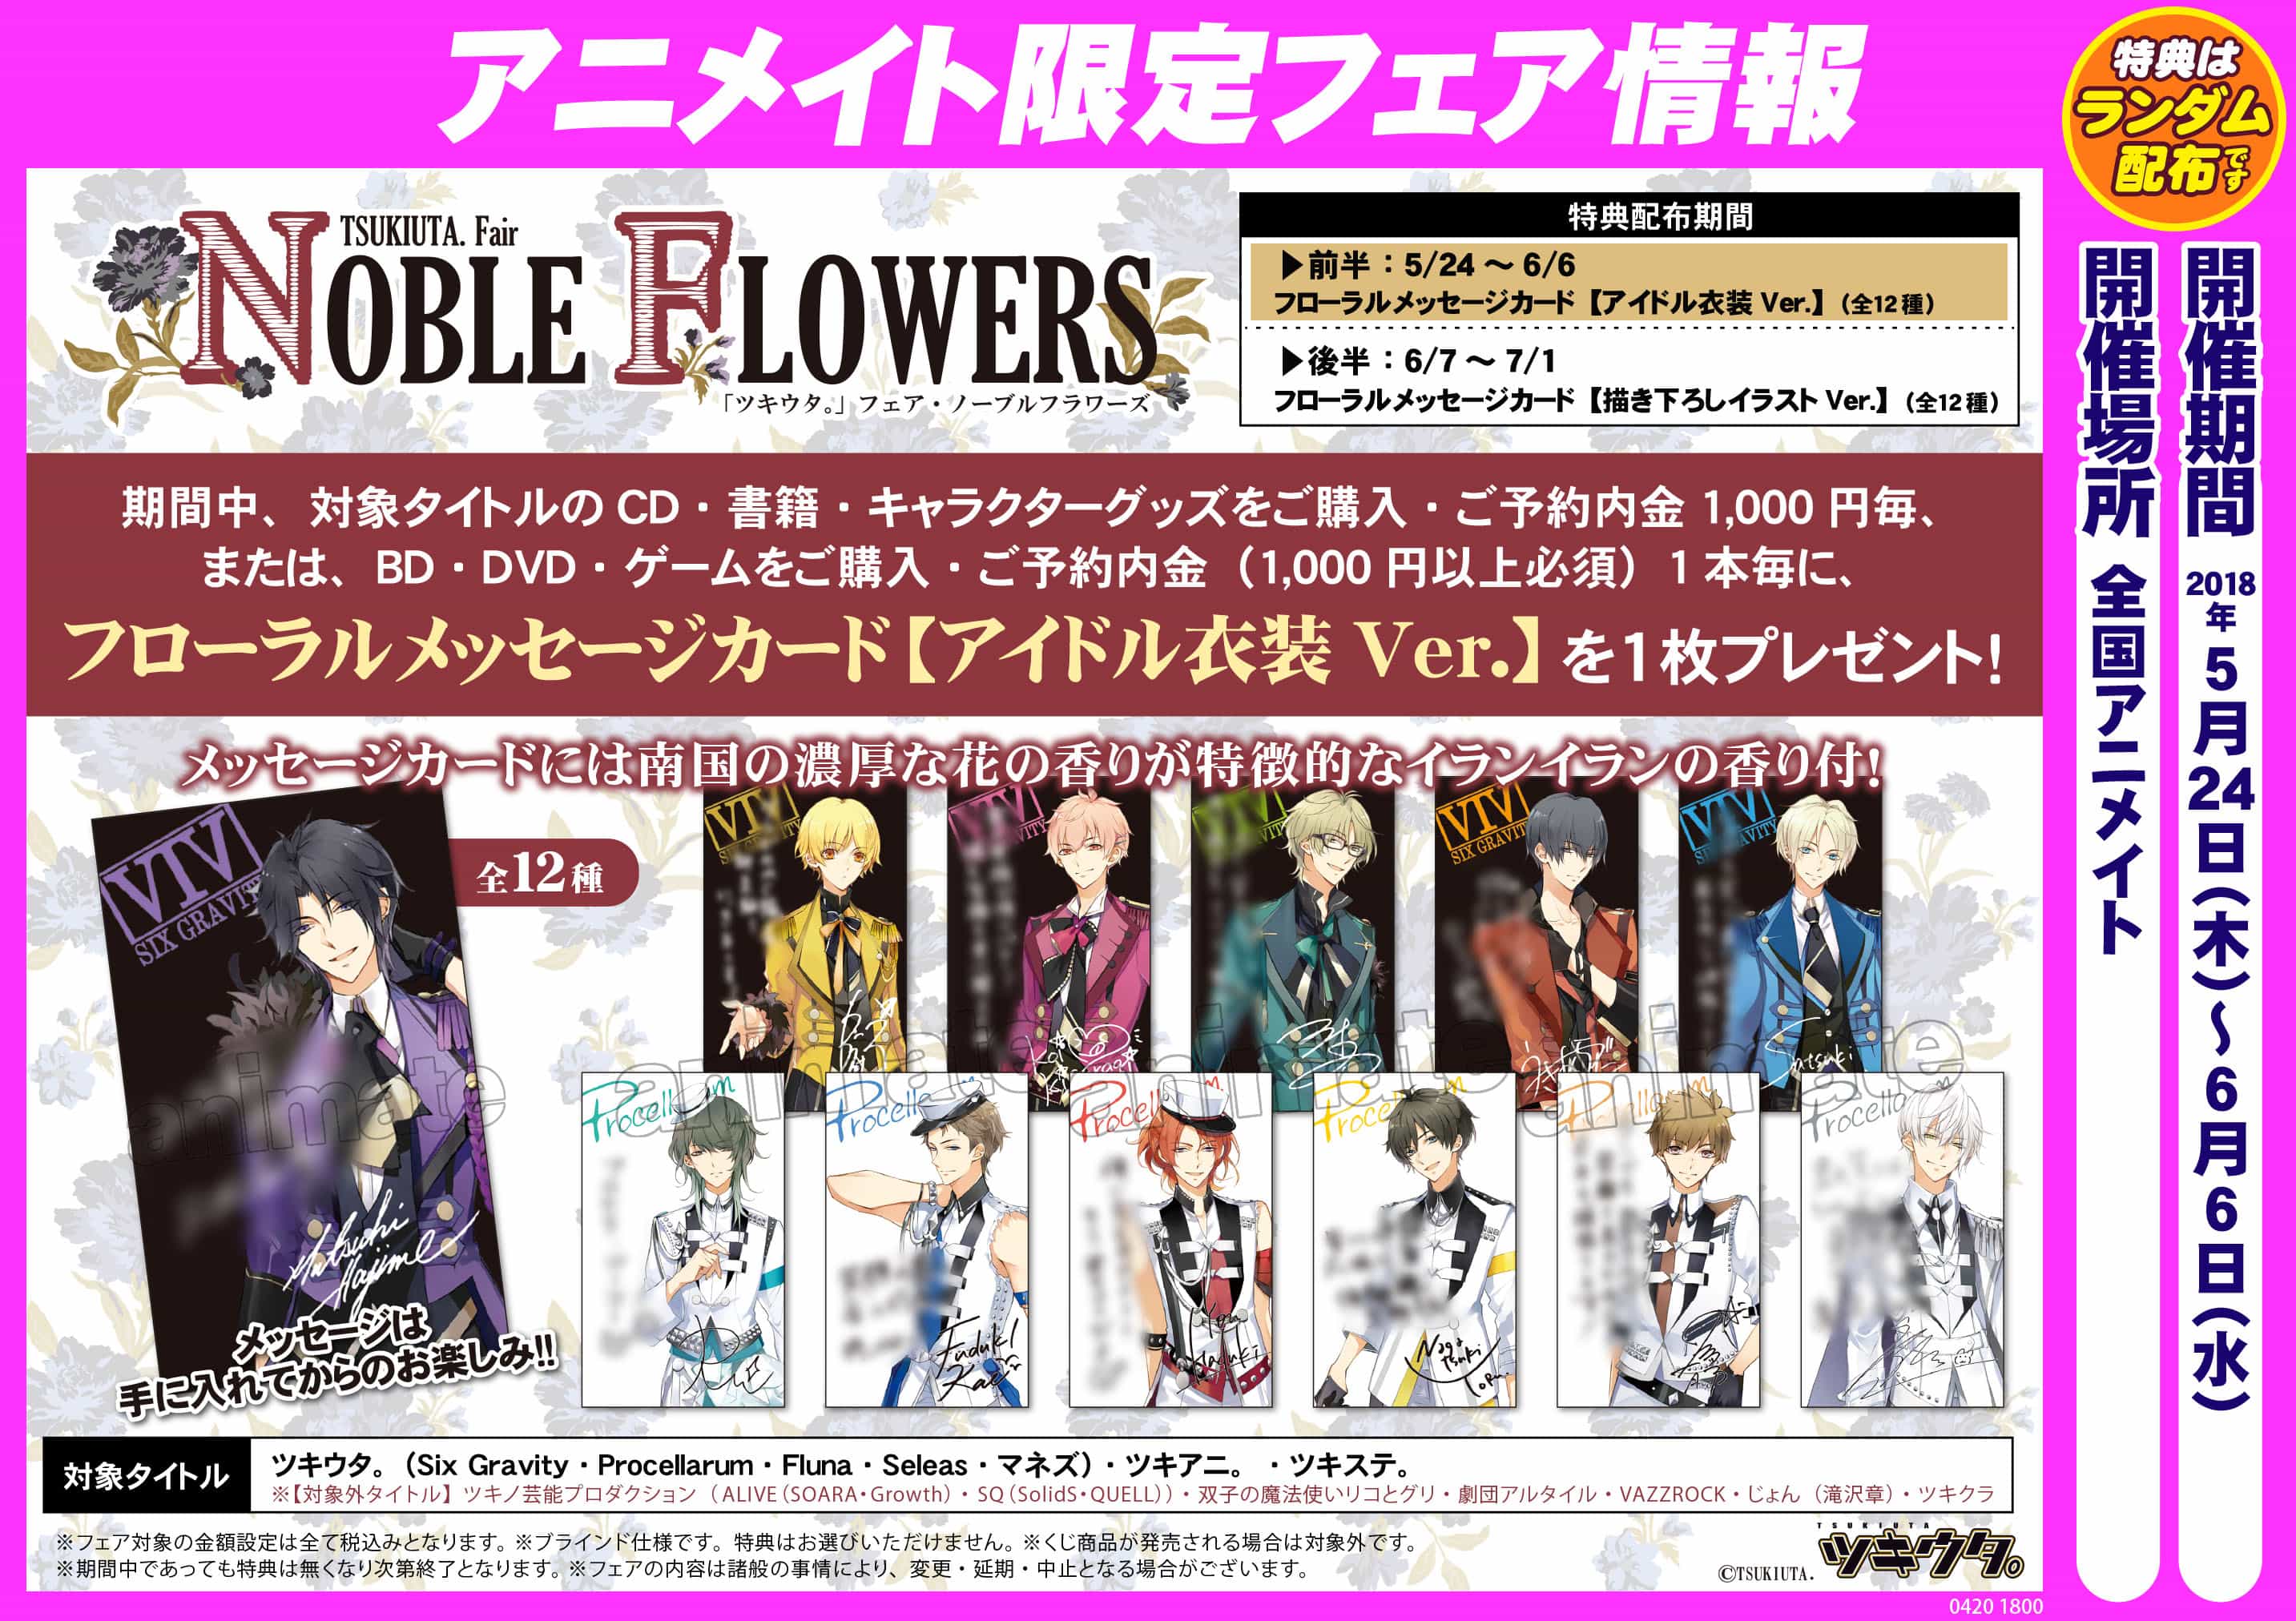 Tsukiuta Fair Noble Flowers ツキウタ フェア ノーブルフラワーズ 開催 アニメイト福岡パルコ